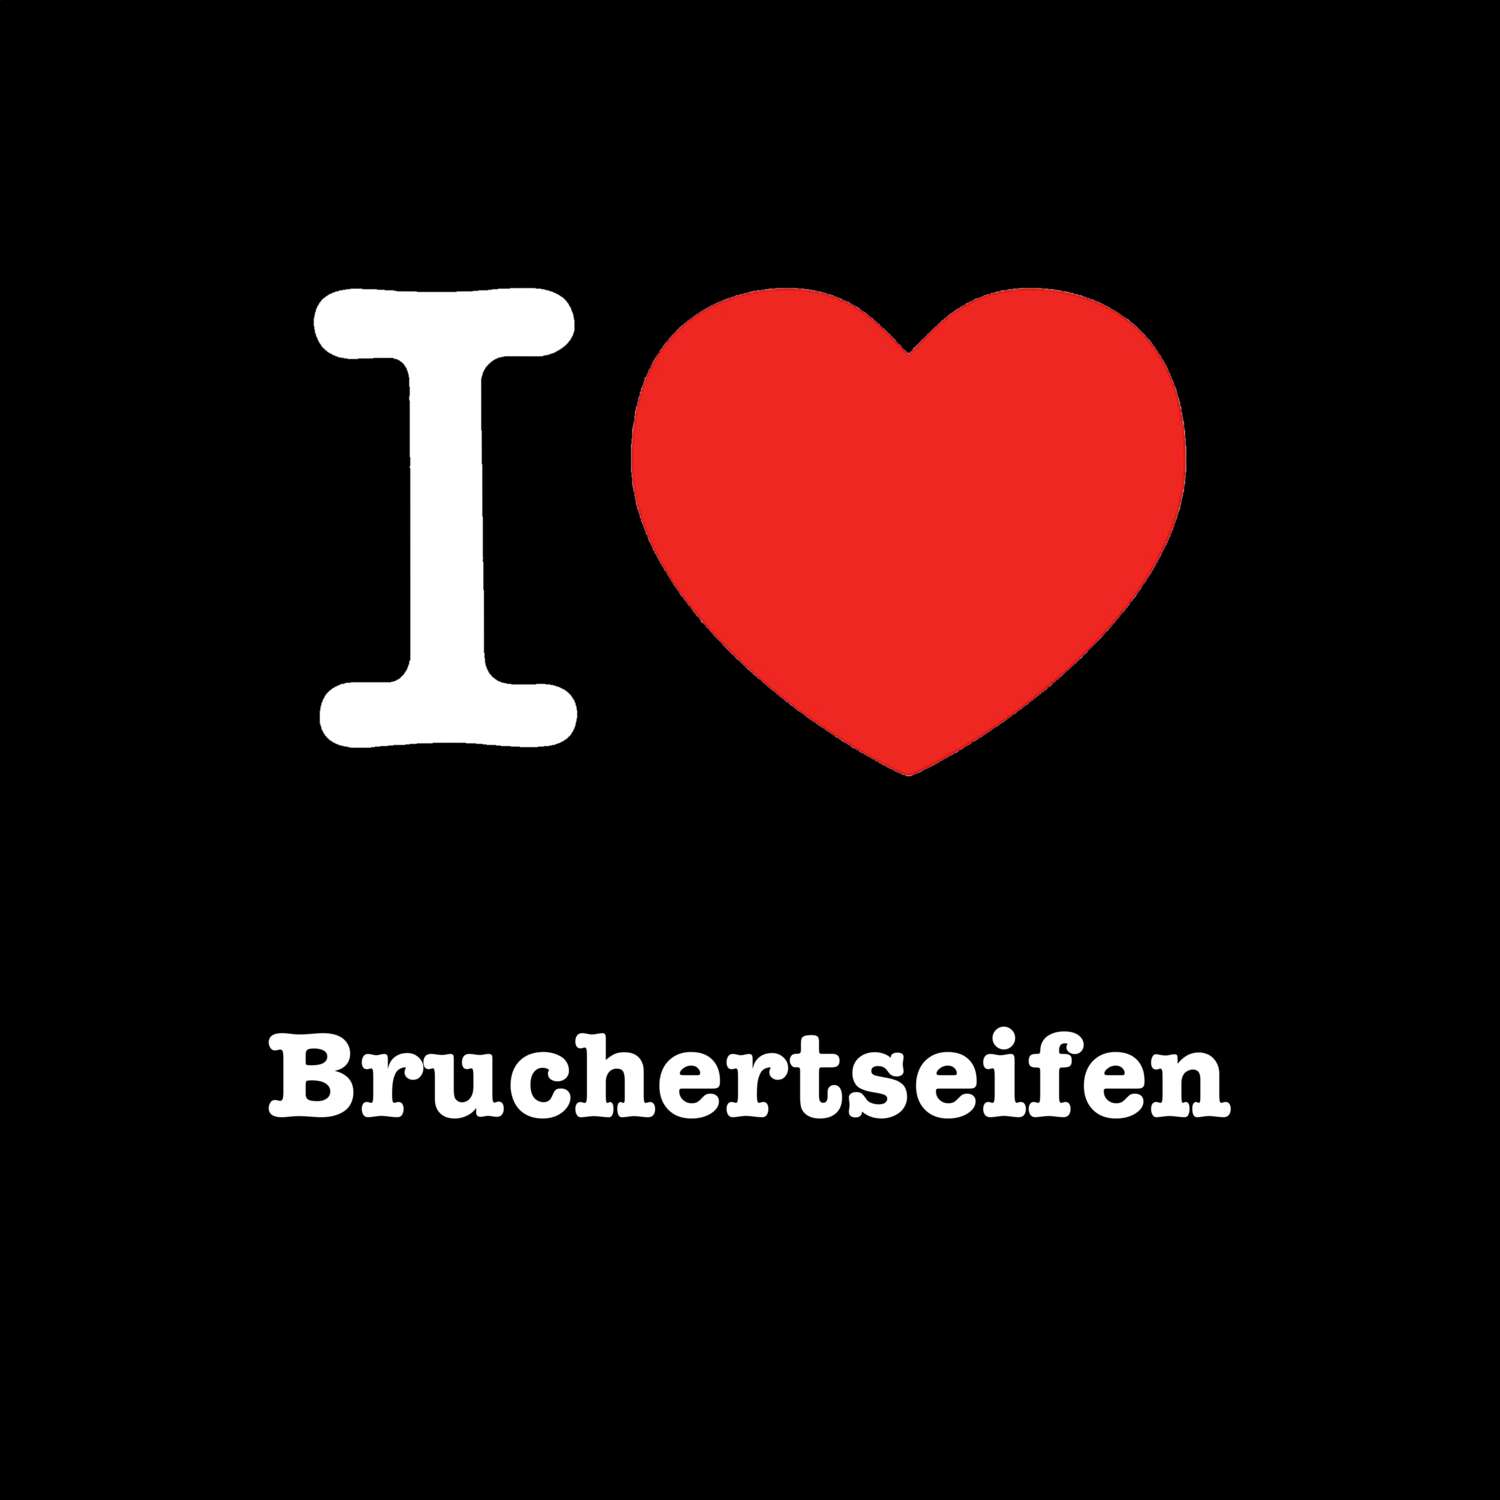 Bruchertseifen T-Shirt »I love«